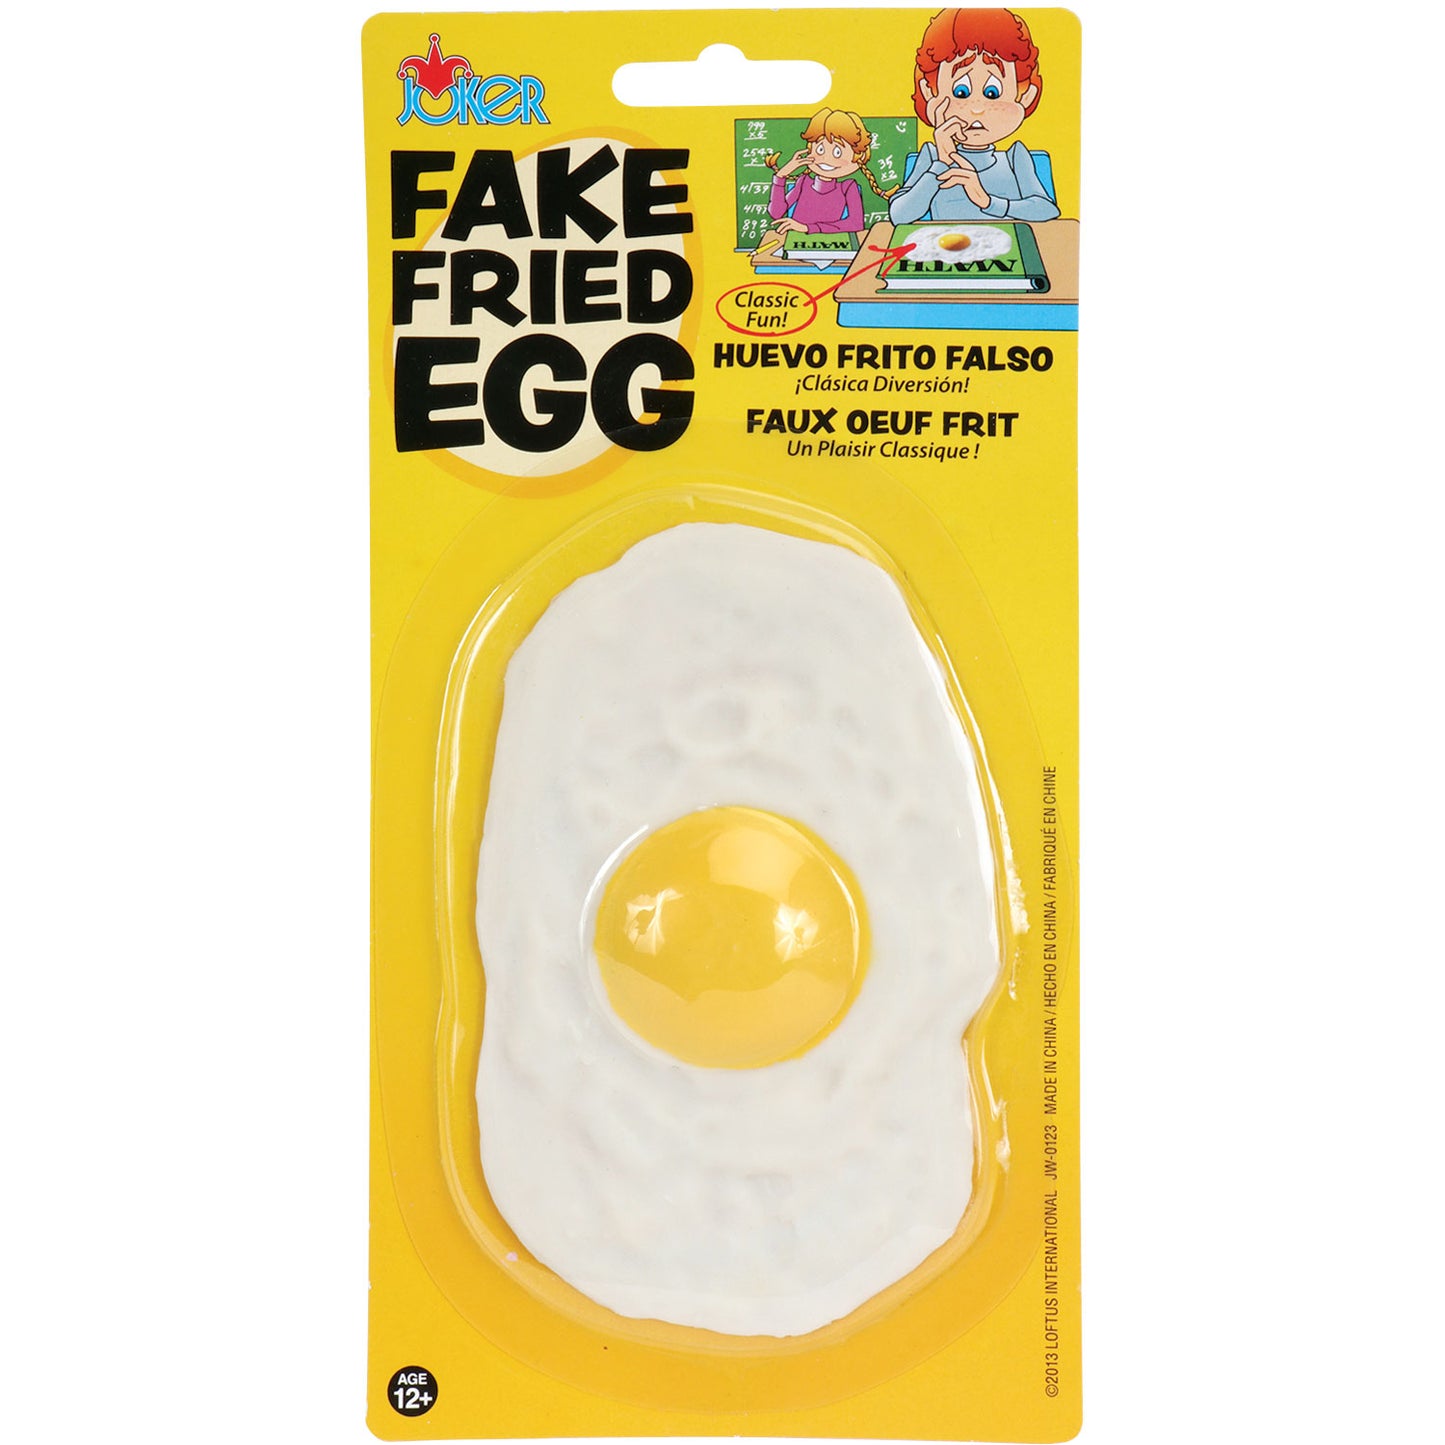 Huevo frito falso